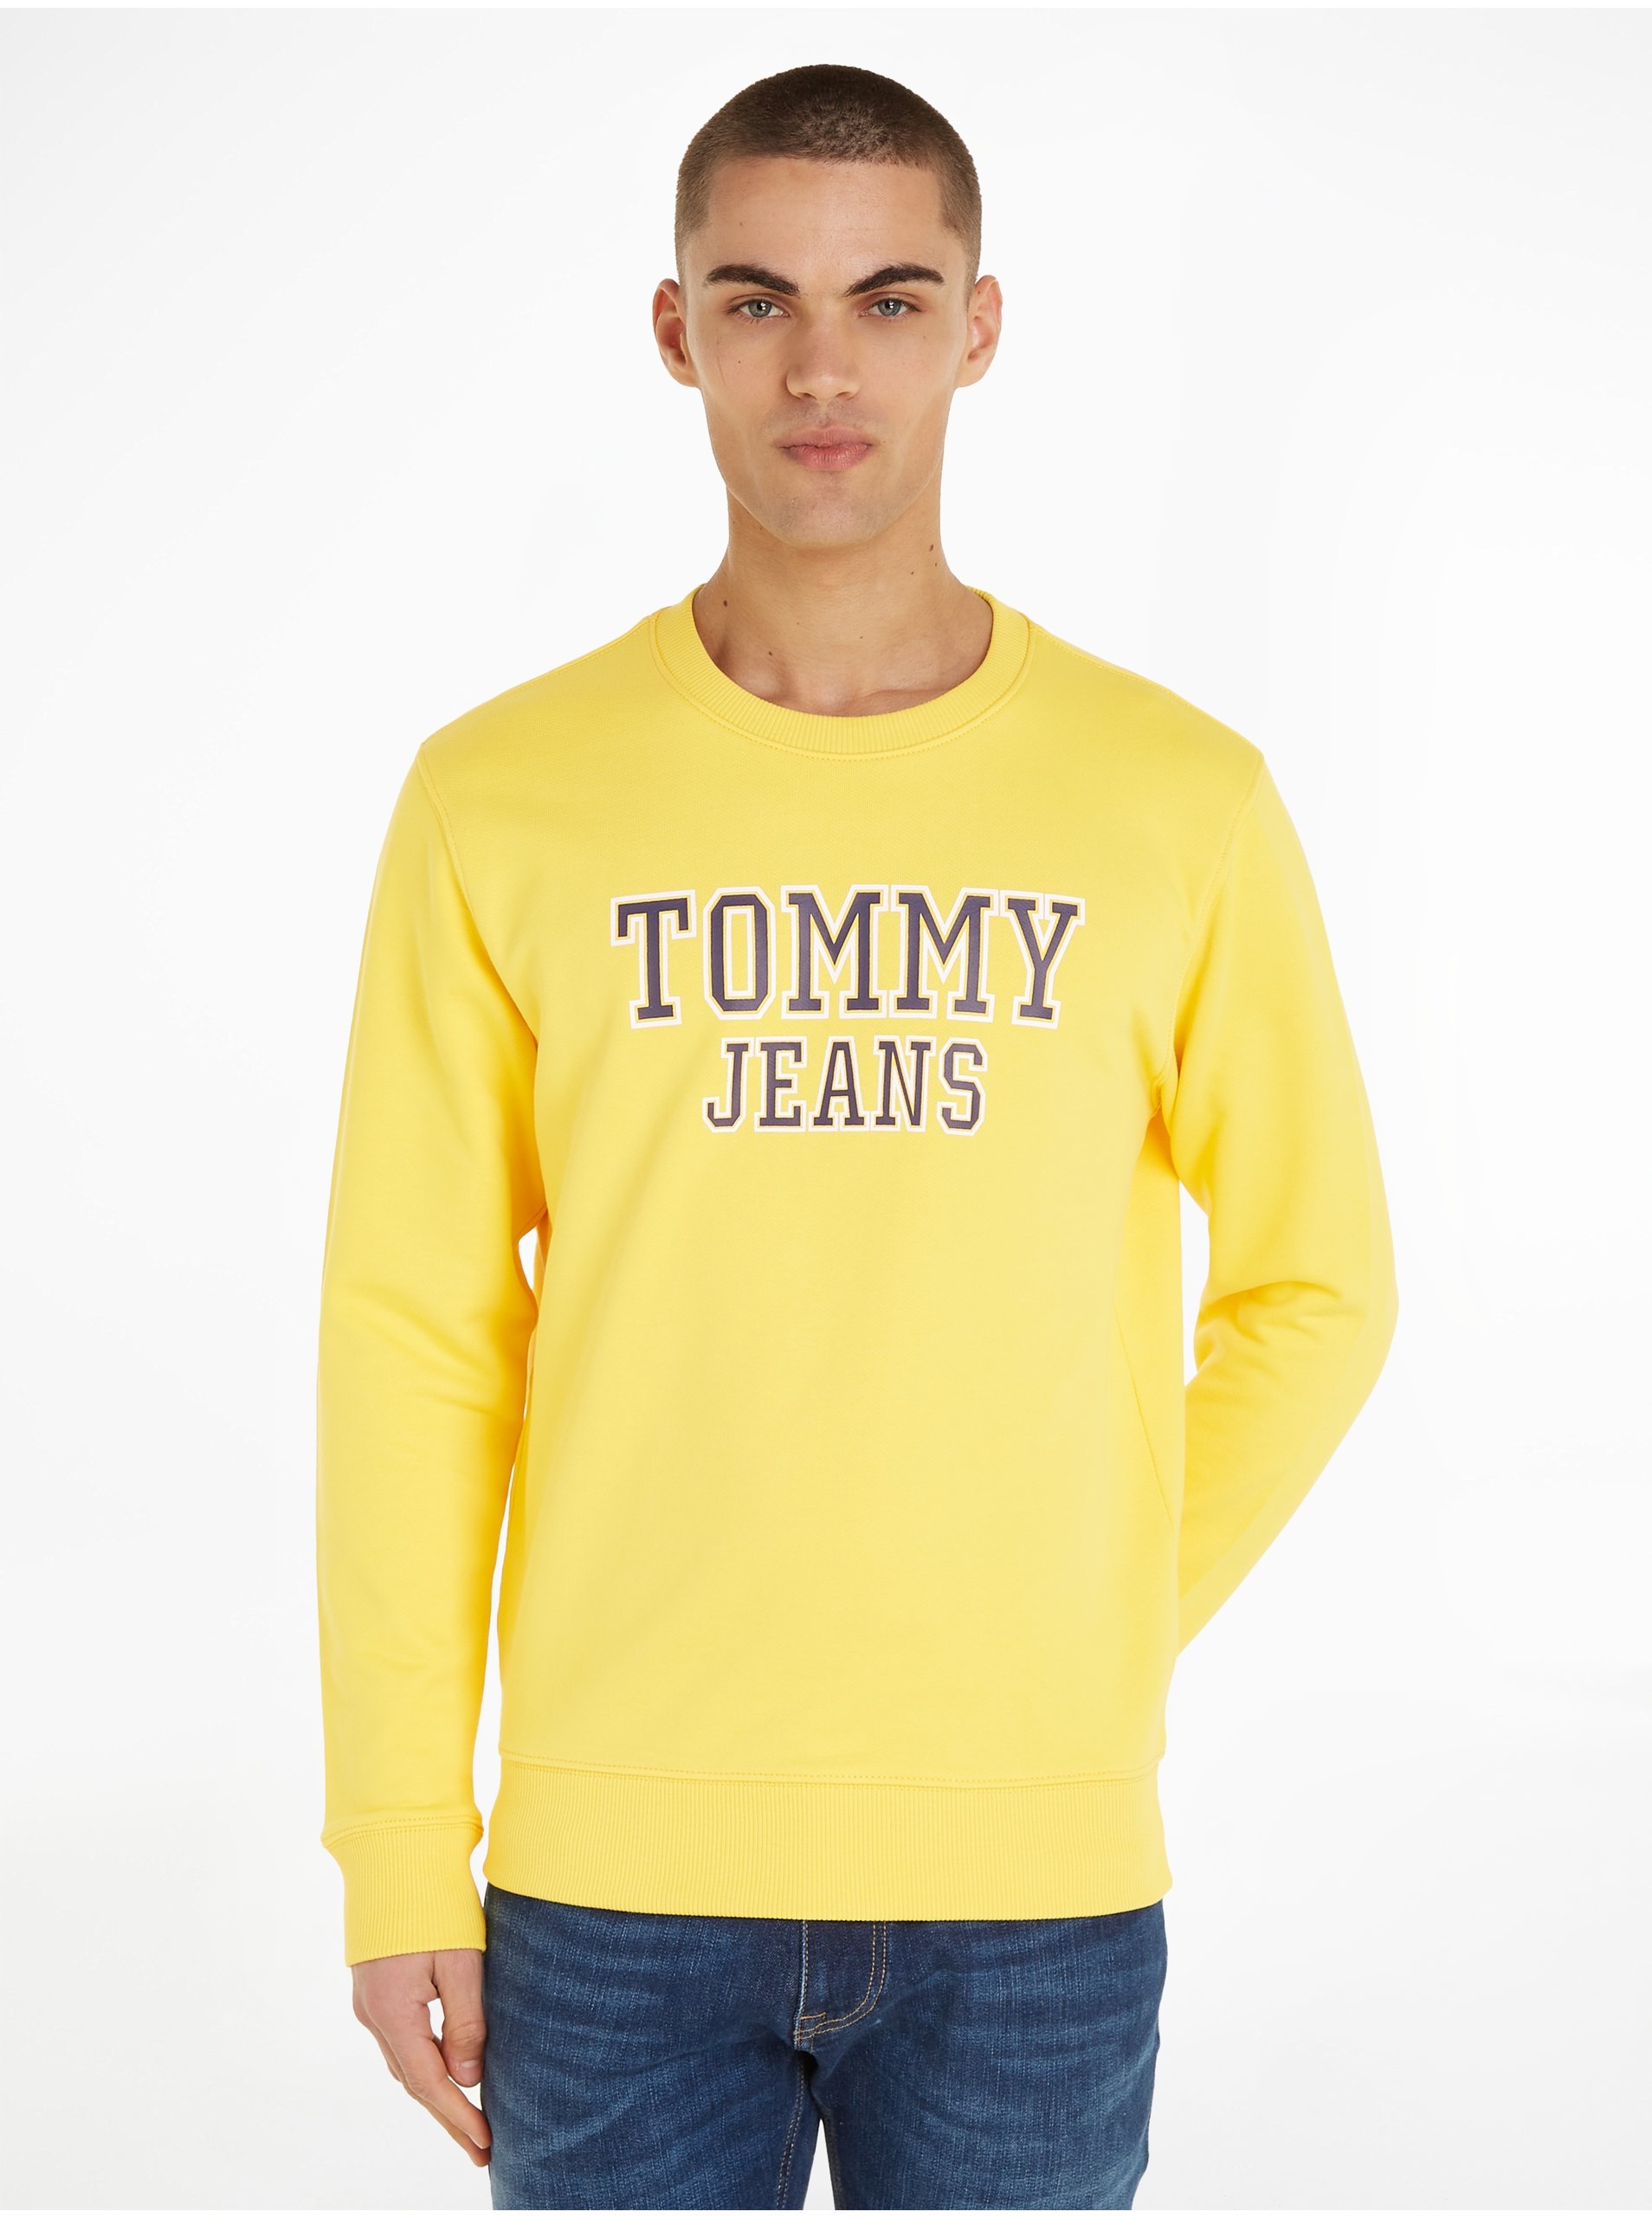 Lacno Mikiny bez kapuce pre mužov Tommy Jeans - žltá